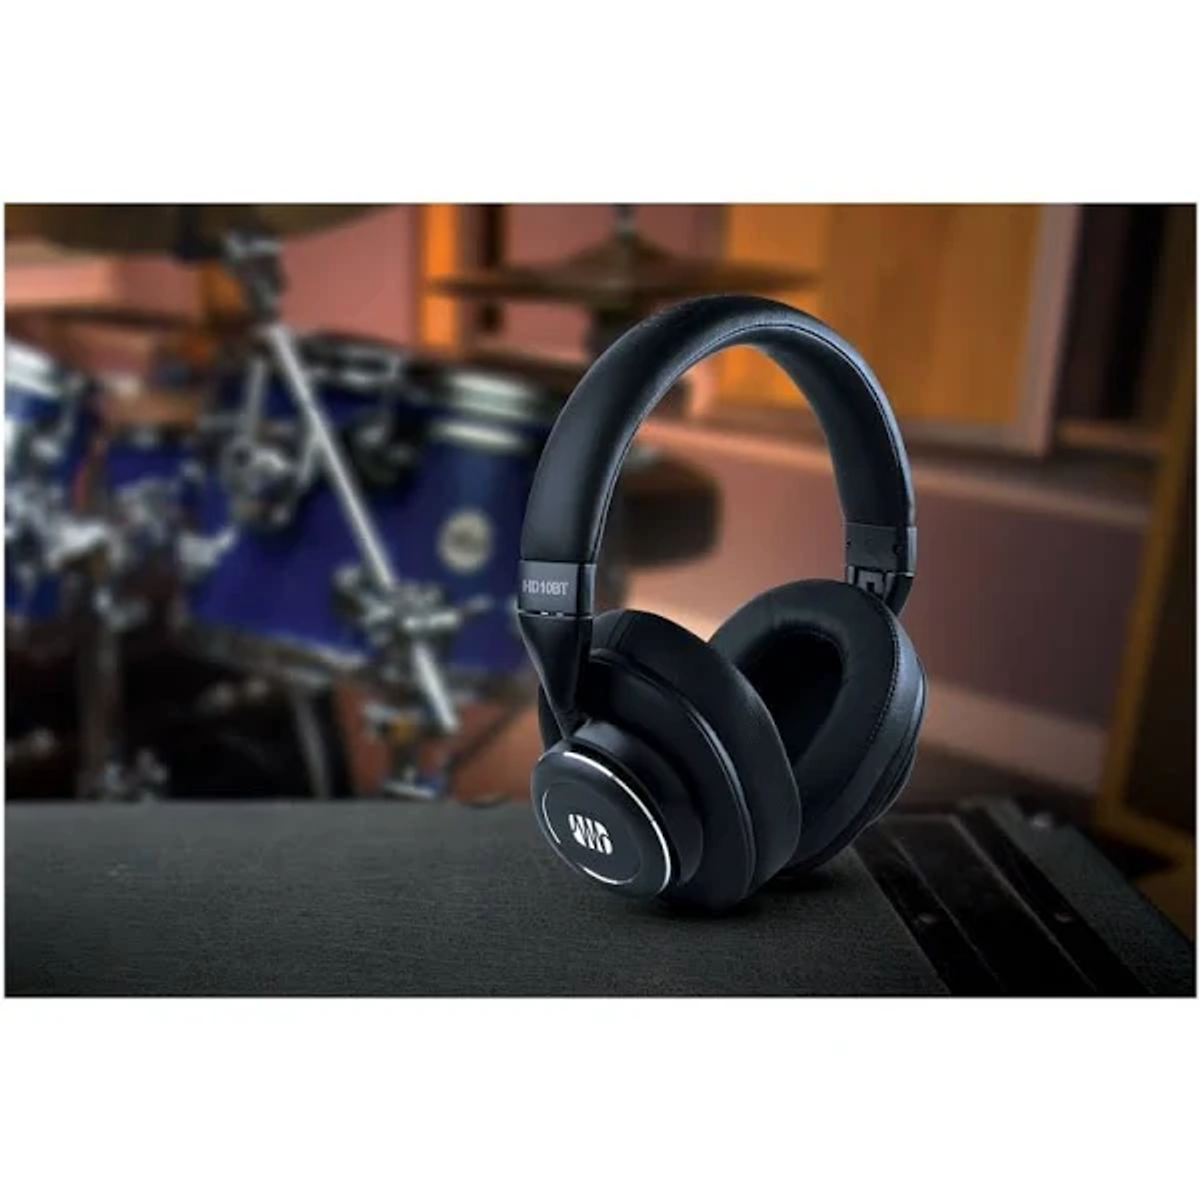 Schwarz PRESONUS Kopfhörer Over-ear HD10BT, Bluetooth